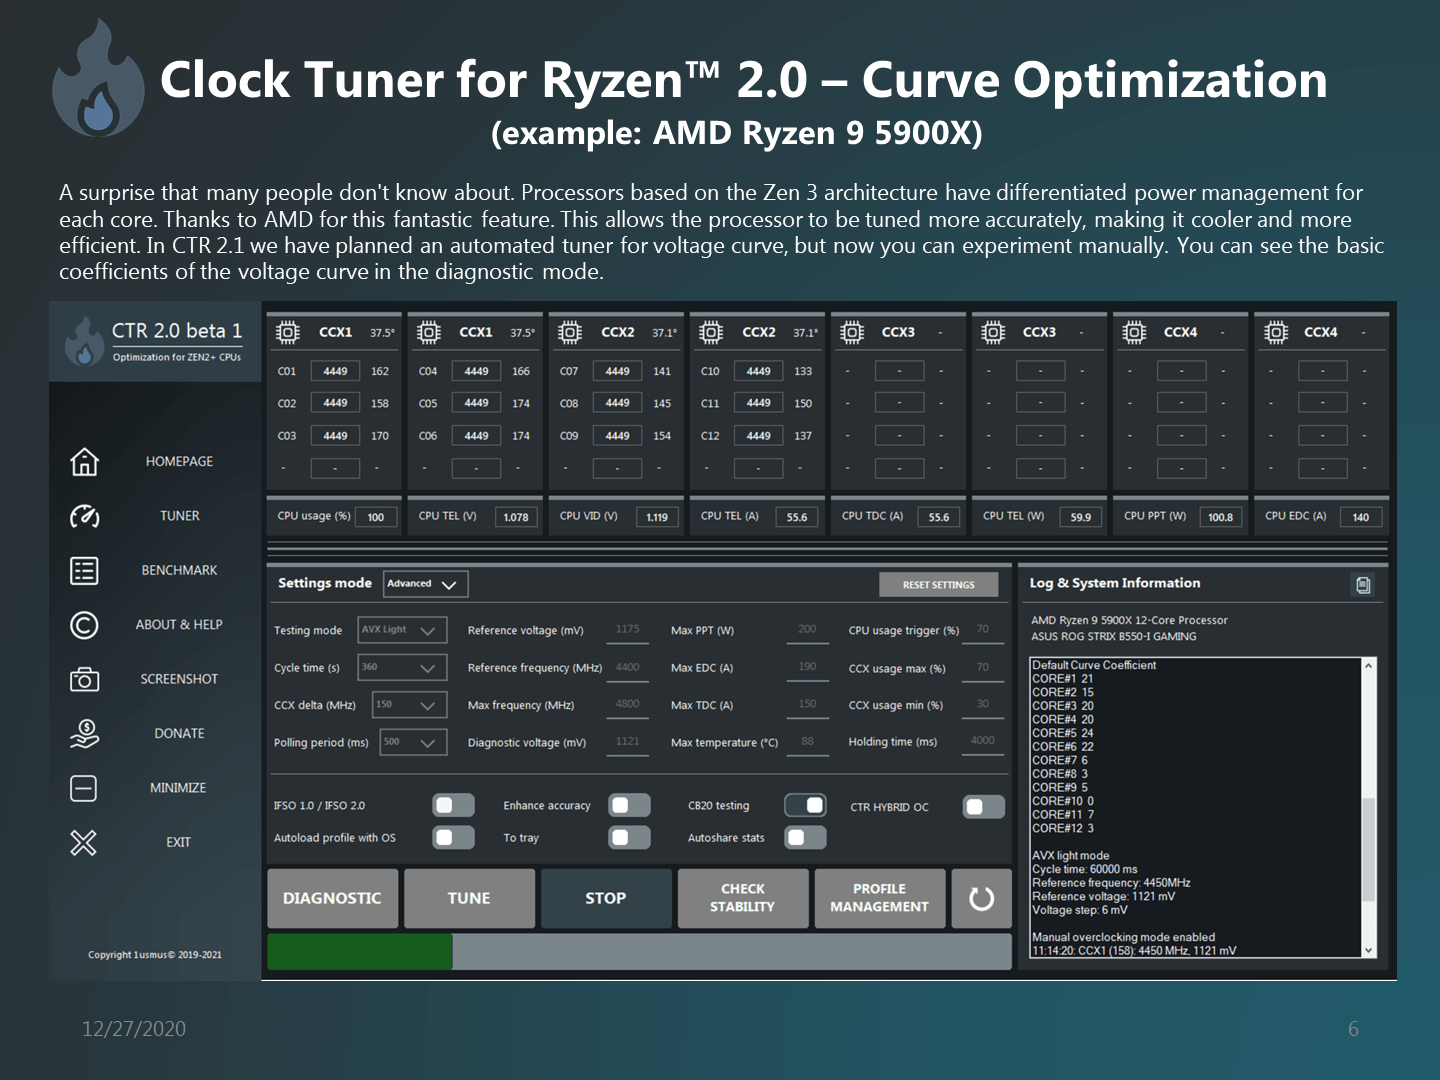 Clock-Tuner-For-Ryzen-2.0-7.png